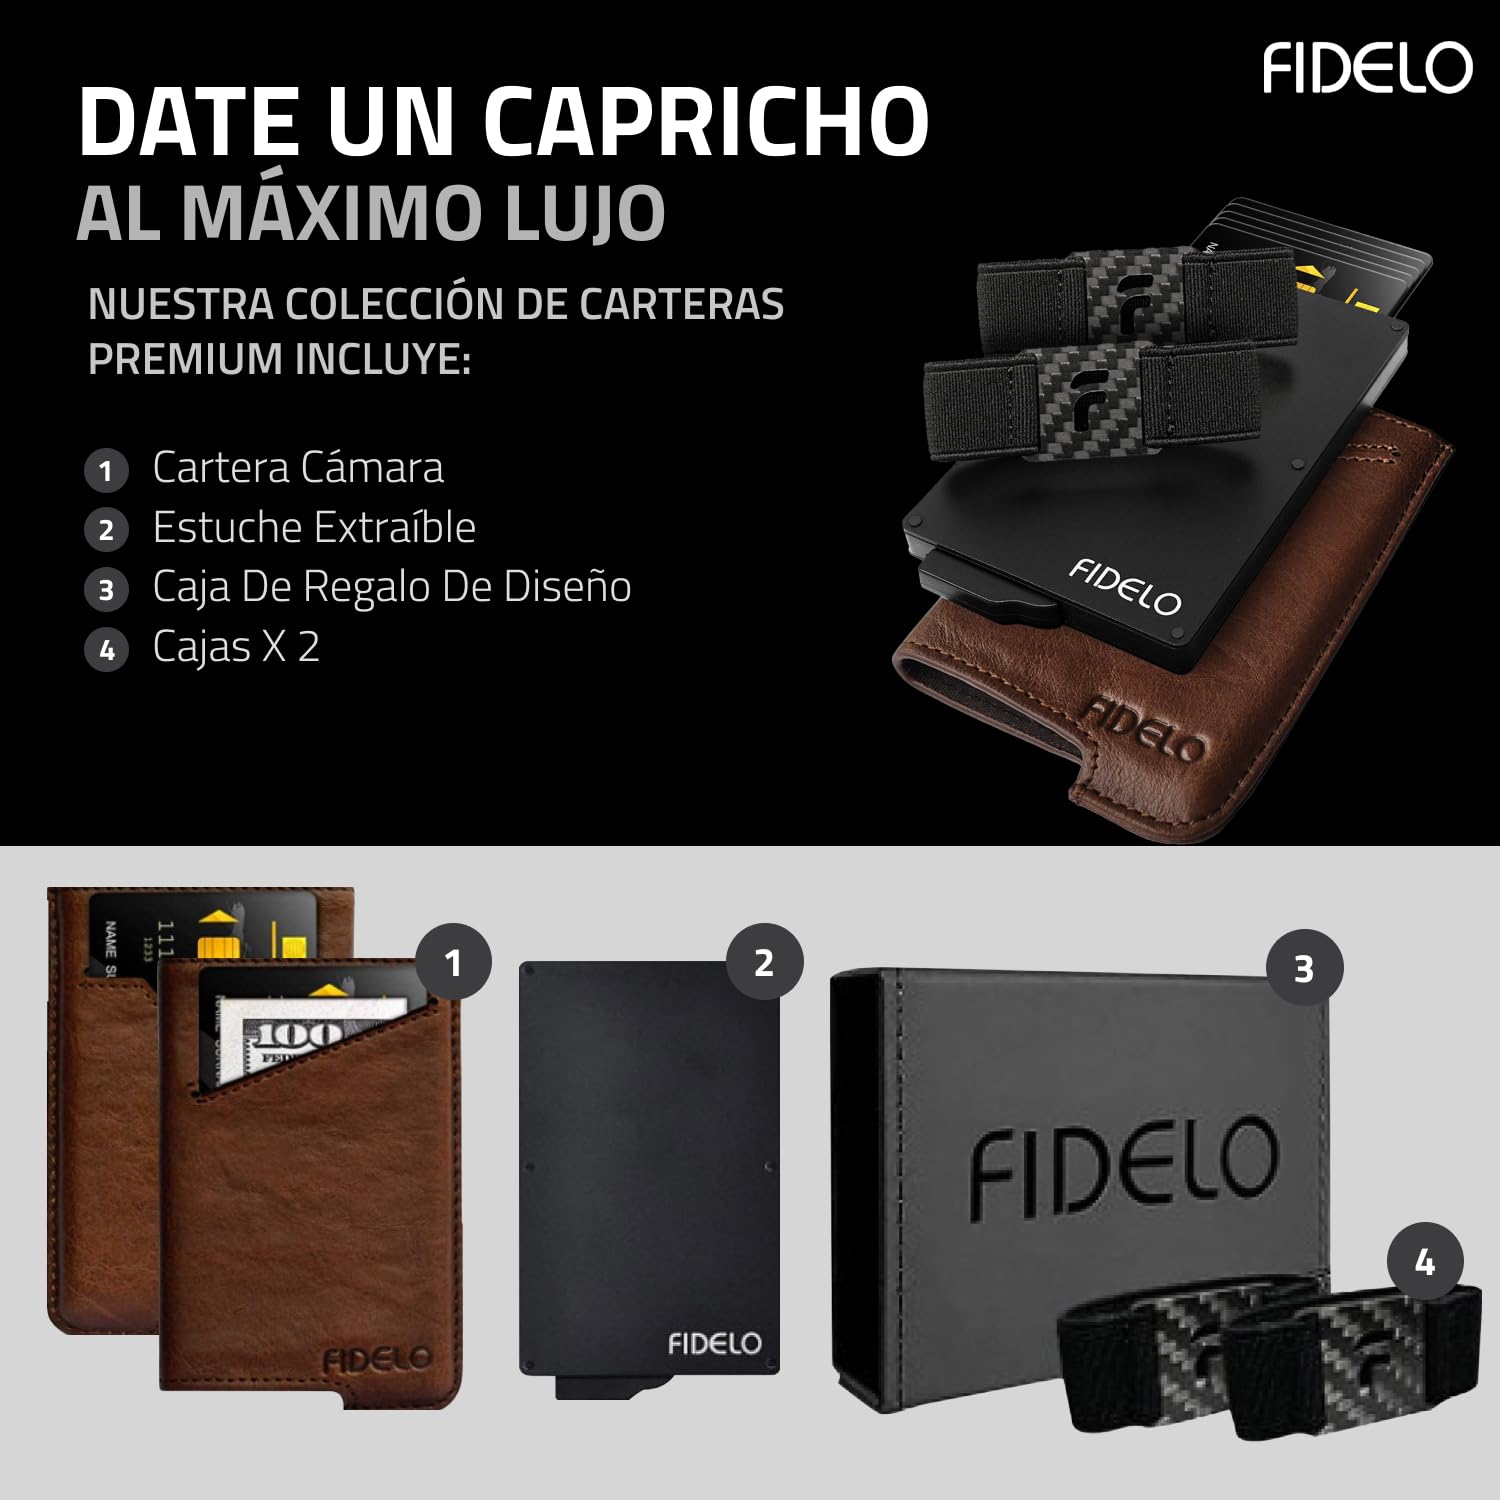 Fidelo Minimalist Wallet for Men - RFID Blocking Pop up Wallet Credit Card Holder, Slim Wallet for Men 6063 Aluminum Wallet with a Card Clip Holder with a Removable Leather Case - Vintage Brown